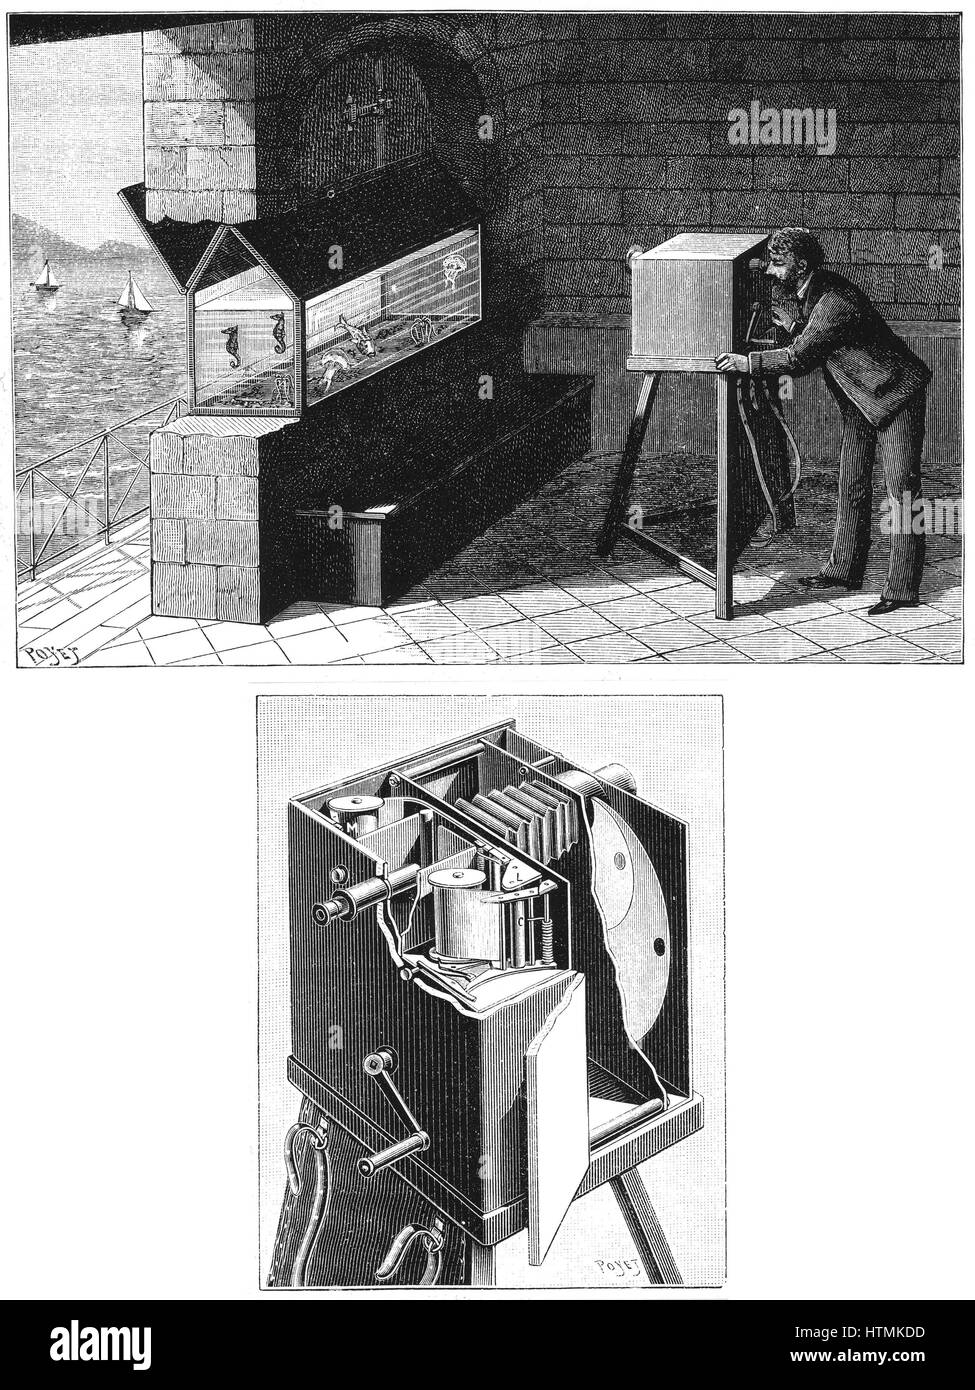 Etienne Jules Mareys (1830-1903) Chambre Chrono-Photographique, die erste Cine-Kamera verwendet wird, um die Bewegung der Lebewesen im Aquarium (oben) zu studieren. Unter Kamera Details, Band der lichtempfindlichen Papier von Eastman oder Balagny zeigen. Gravur-Kneipe Stockfoto